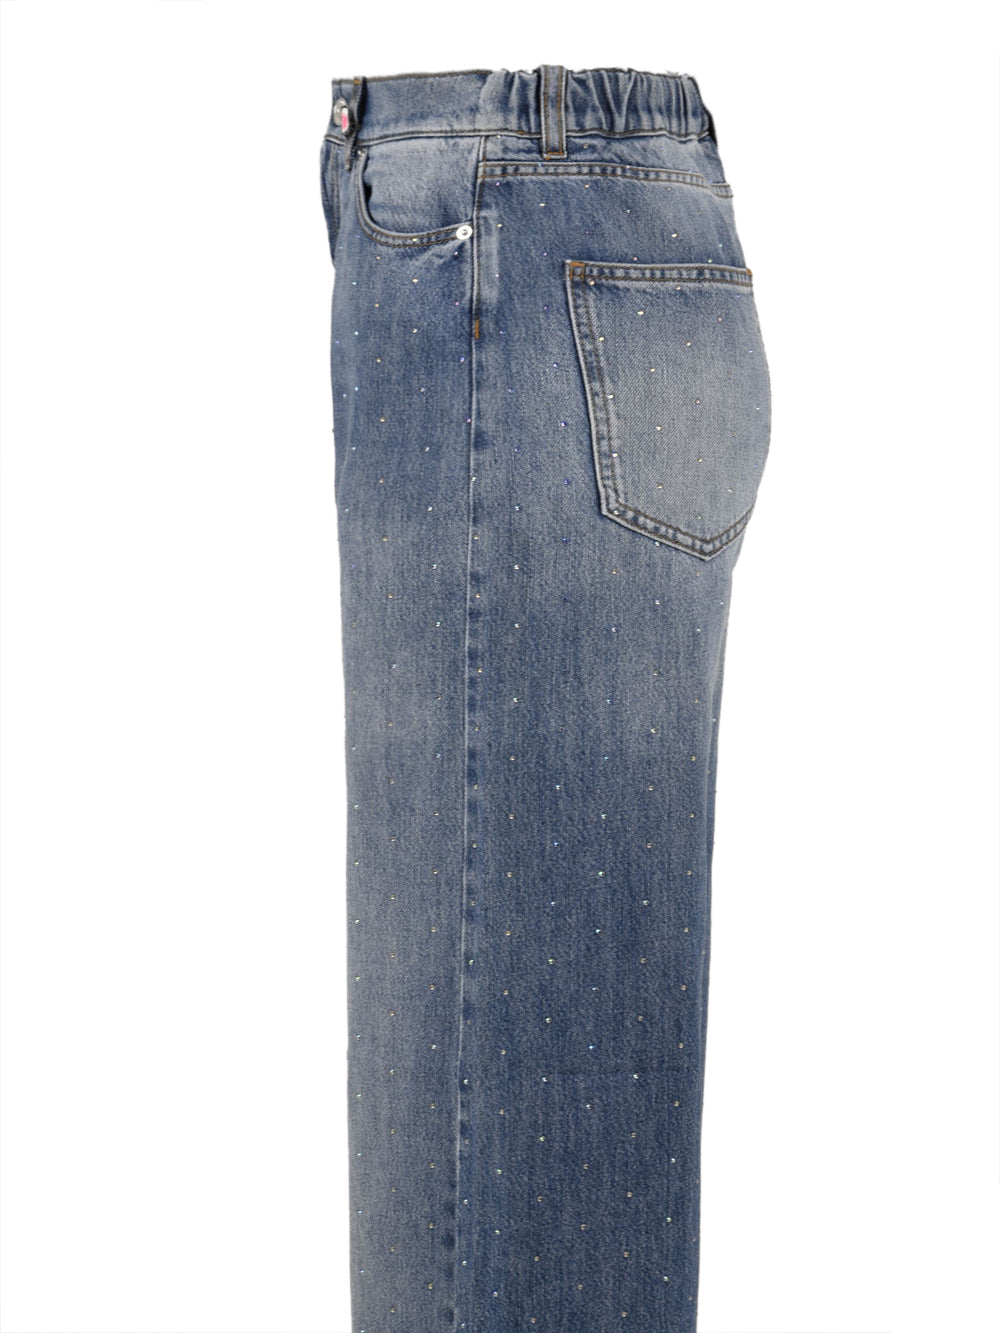 Immagine laterale del jeans in blu scuro da donna modello Scarlett firmato I Love My Pants. Con tasche frontali e due sul retro con passanti in vita per la cintura. Presenta anche degli strass sia sul retro che frontalmente.